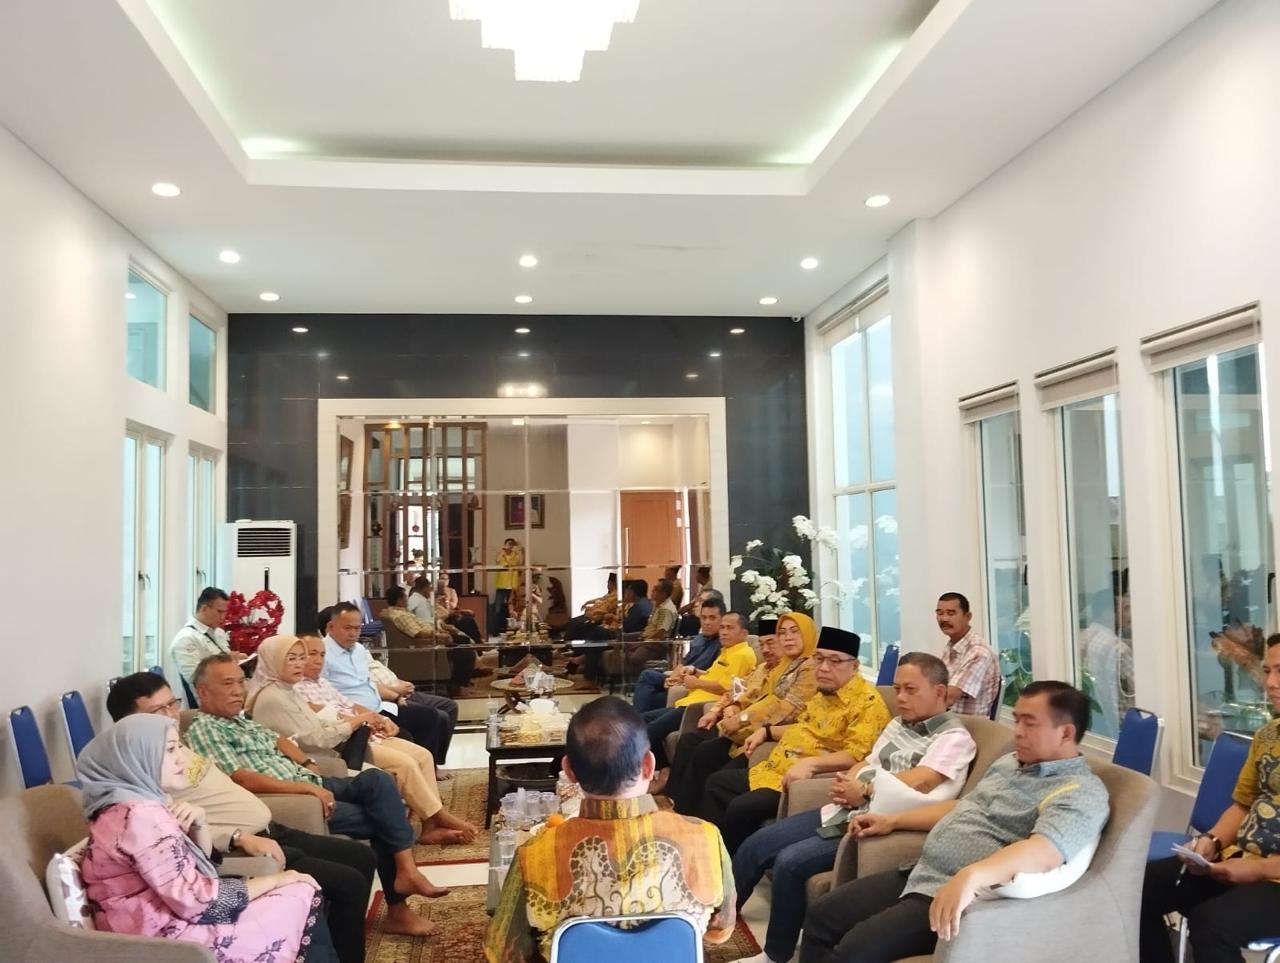 Bacagub Partai Golkar Ir. Hanan A. Rozak Gelar Silaturahmi Bersama Tokoh Golkar Provinsi Lampung 